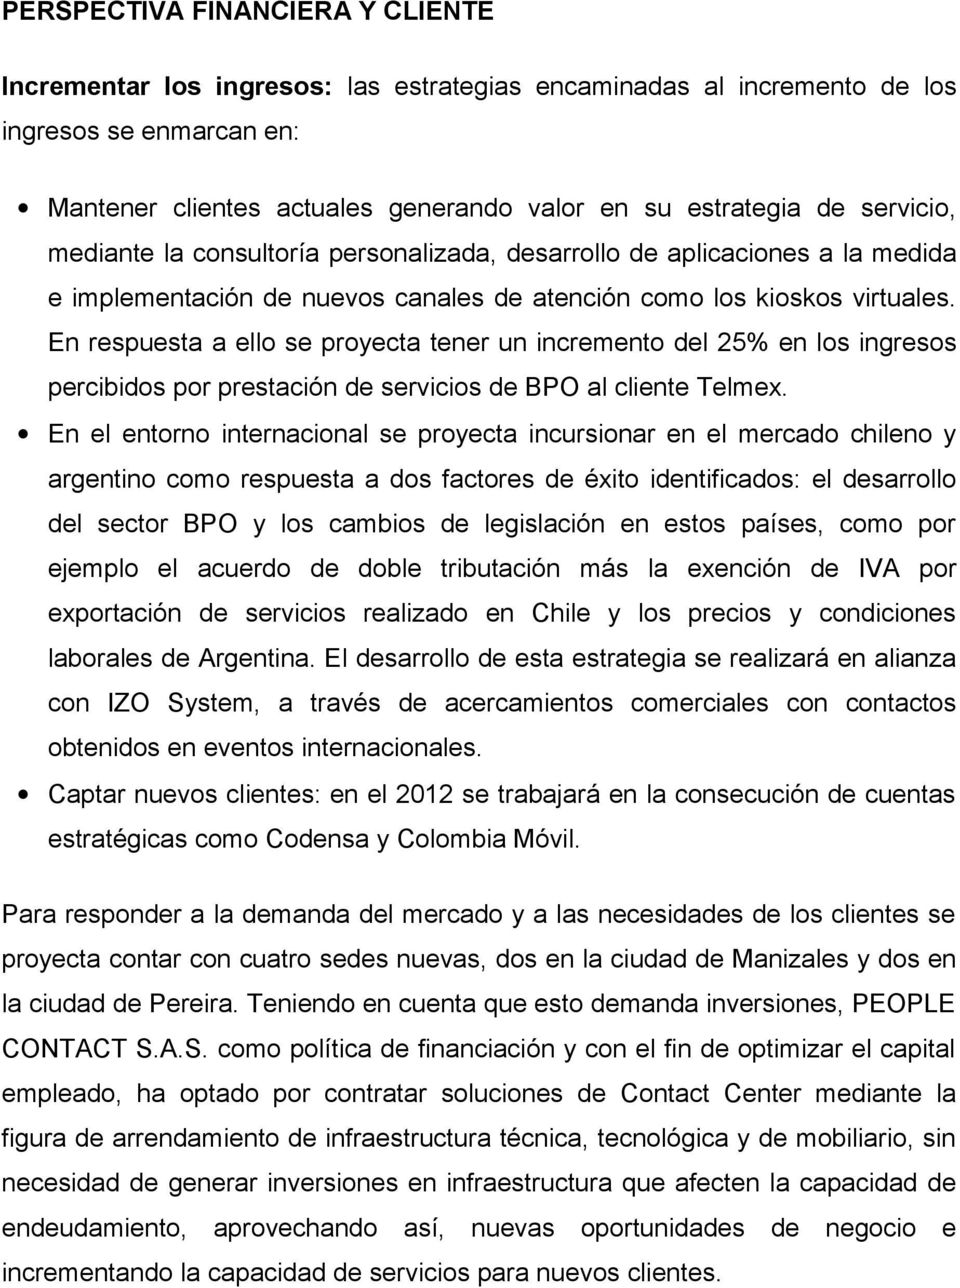 En respuesta a ello se proyecta tener un incremento del 25% en los ingresos percibidos por prestación de servicios de BPO al cliente Telmex.